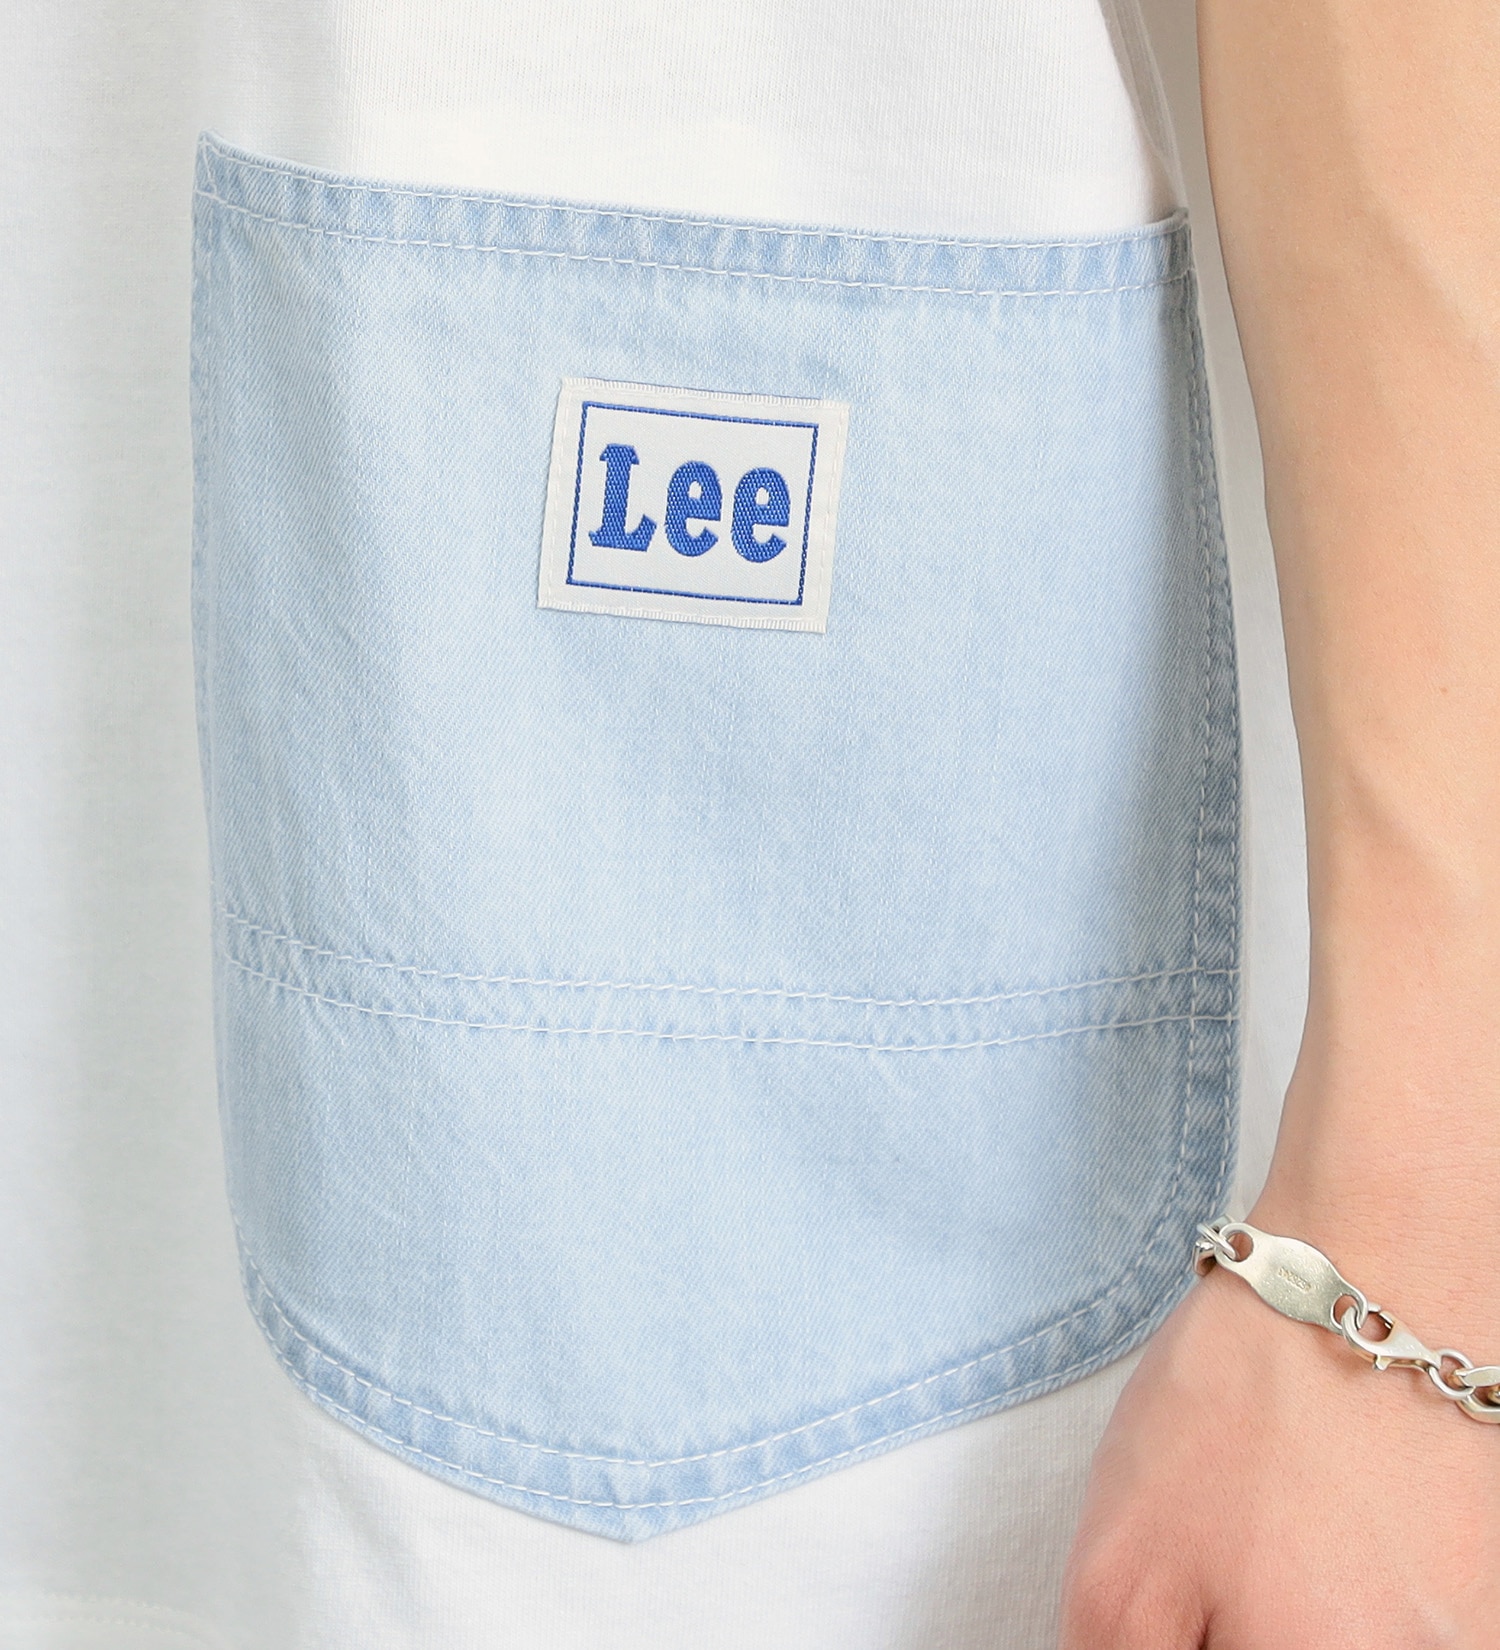 Lee(リー)のペインターダブルポケット ショートスリーブTee|トップス/Tシャツ/カットソー/メンズ|ホワイト